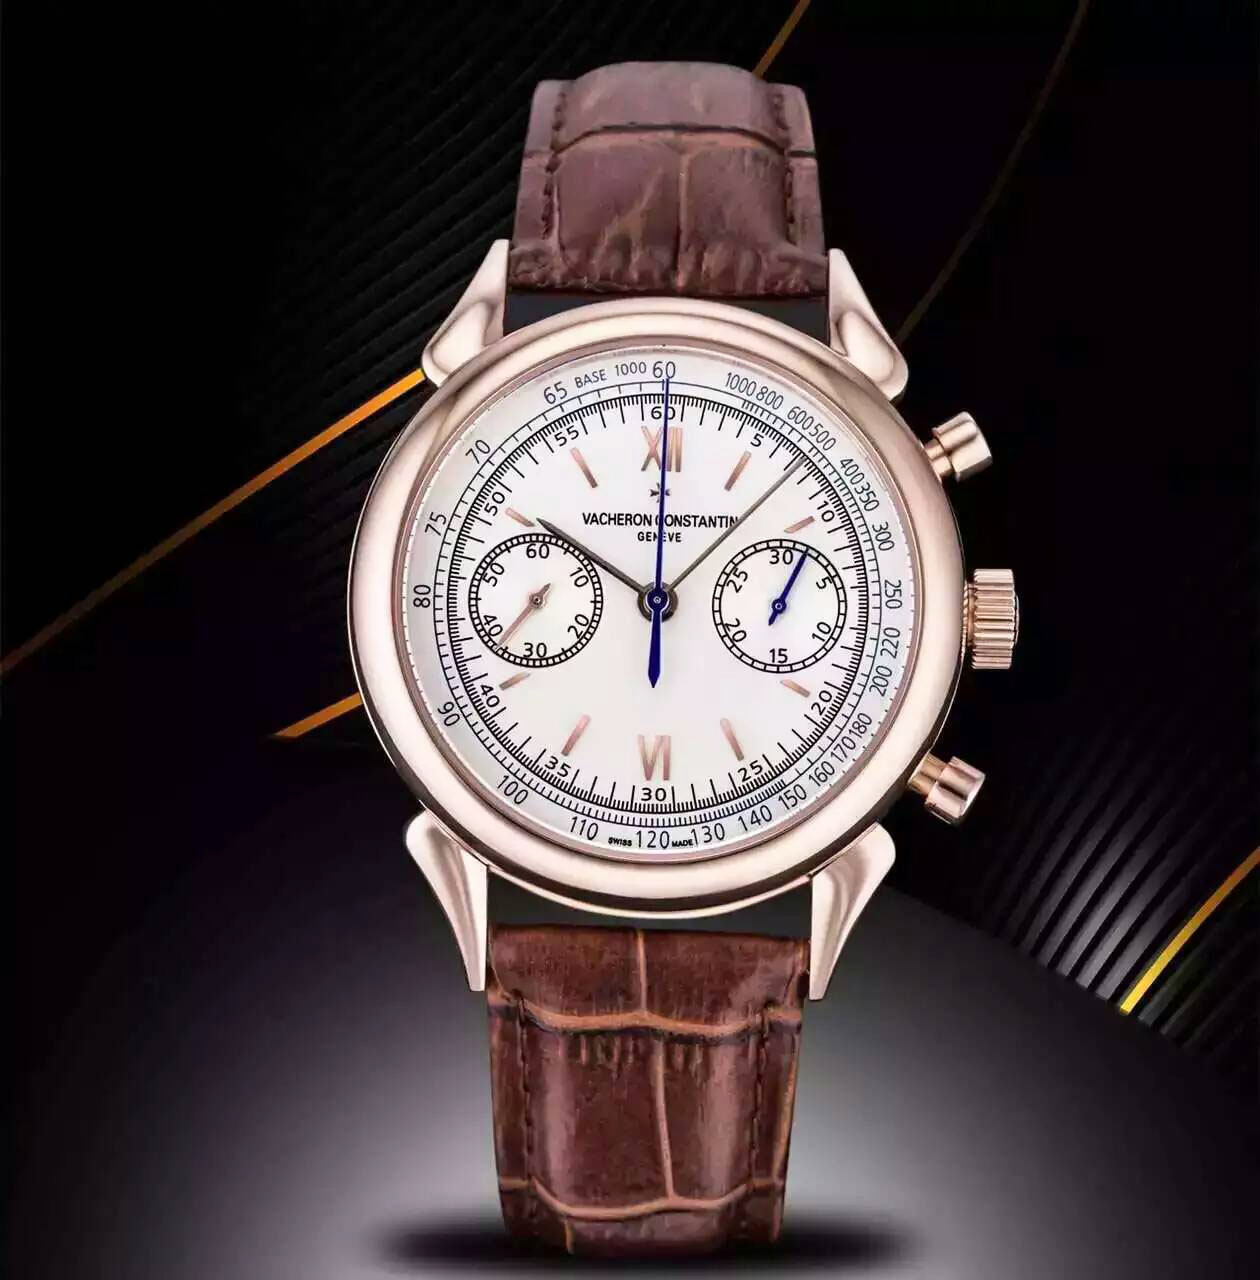 江詩丹頓 Vacheron Constantin 全新“牛角形”錶耳復古錶款 搭載7750自動上鏈機芯